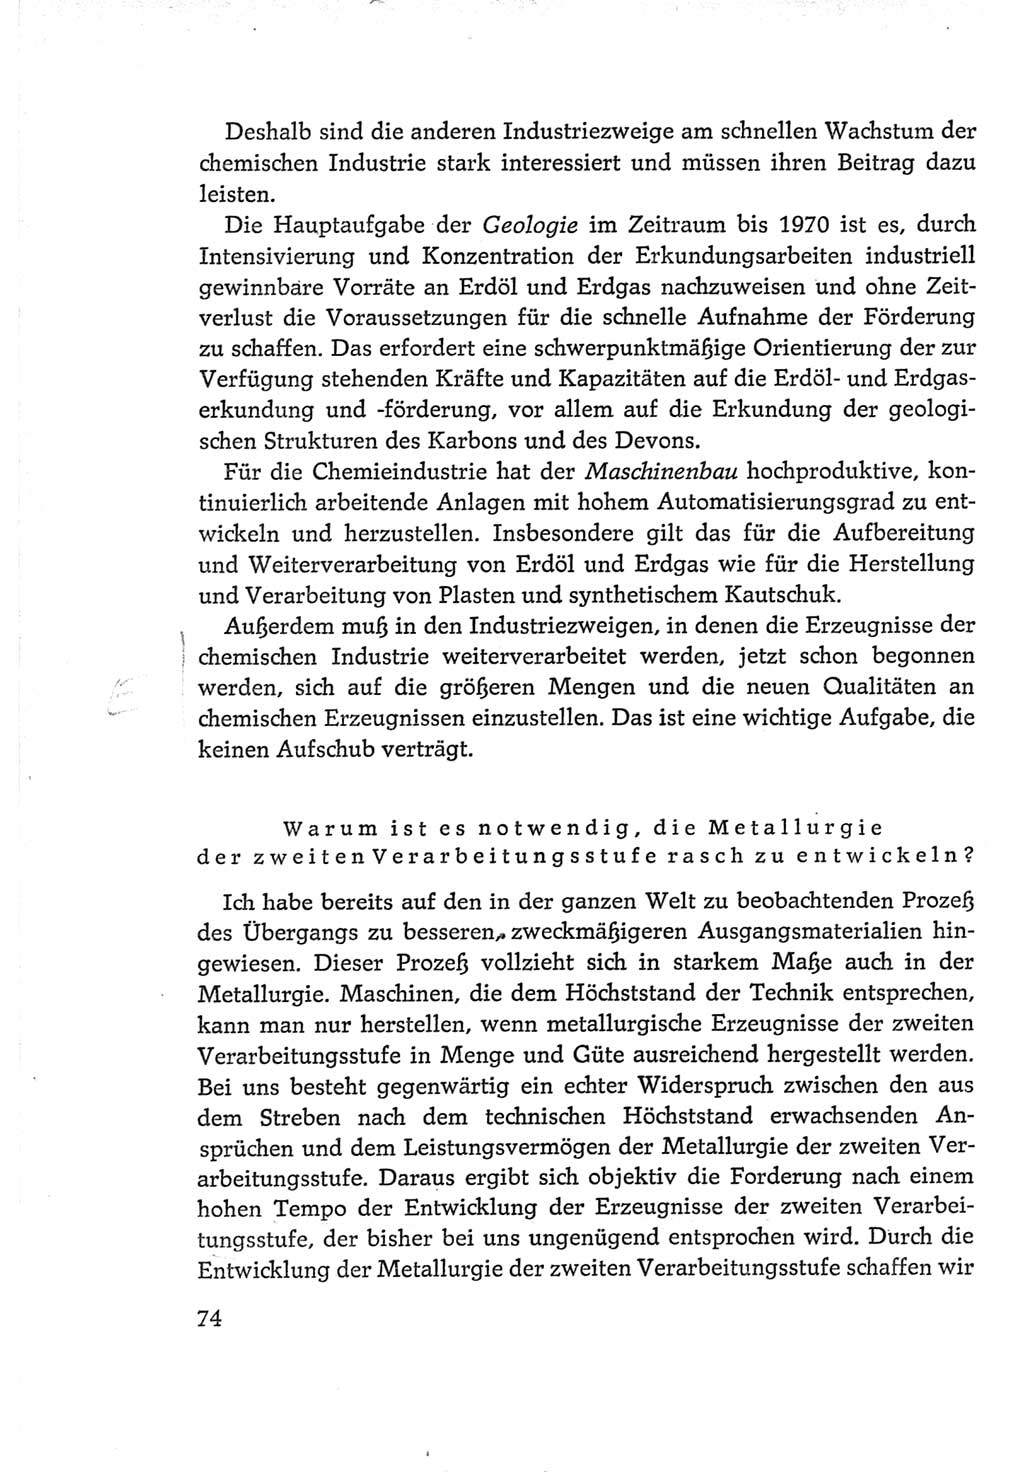 Protokoll der Verhandlungen des Ⅵ. Parteitages der Sozialistischen Einheitspartei Deutschlands (SED) [Deutsche Demokratische Republik (DDR)] 1963, Band Ⅰ, Seite 74 (Prot. Verh. Ⅵ. PT SED DDR 1963, Bd. Ⅰ, S. 74)